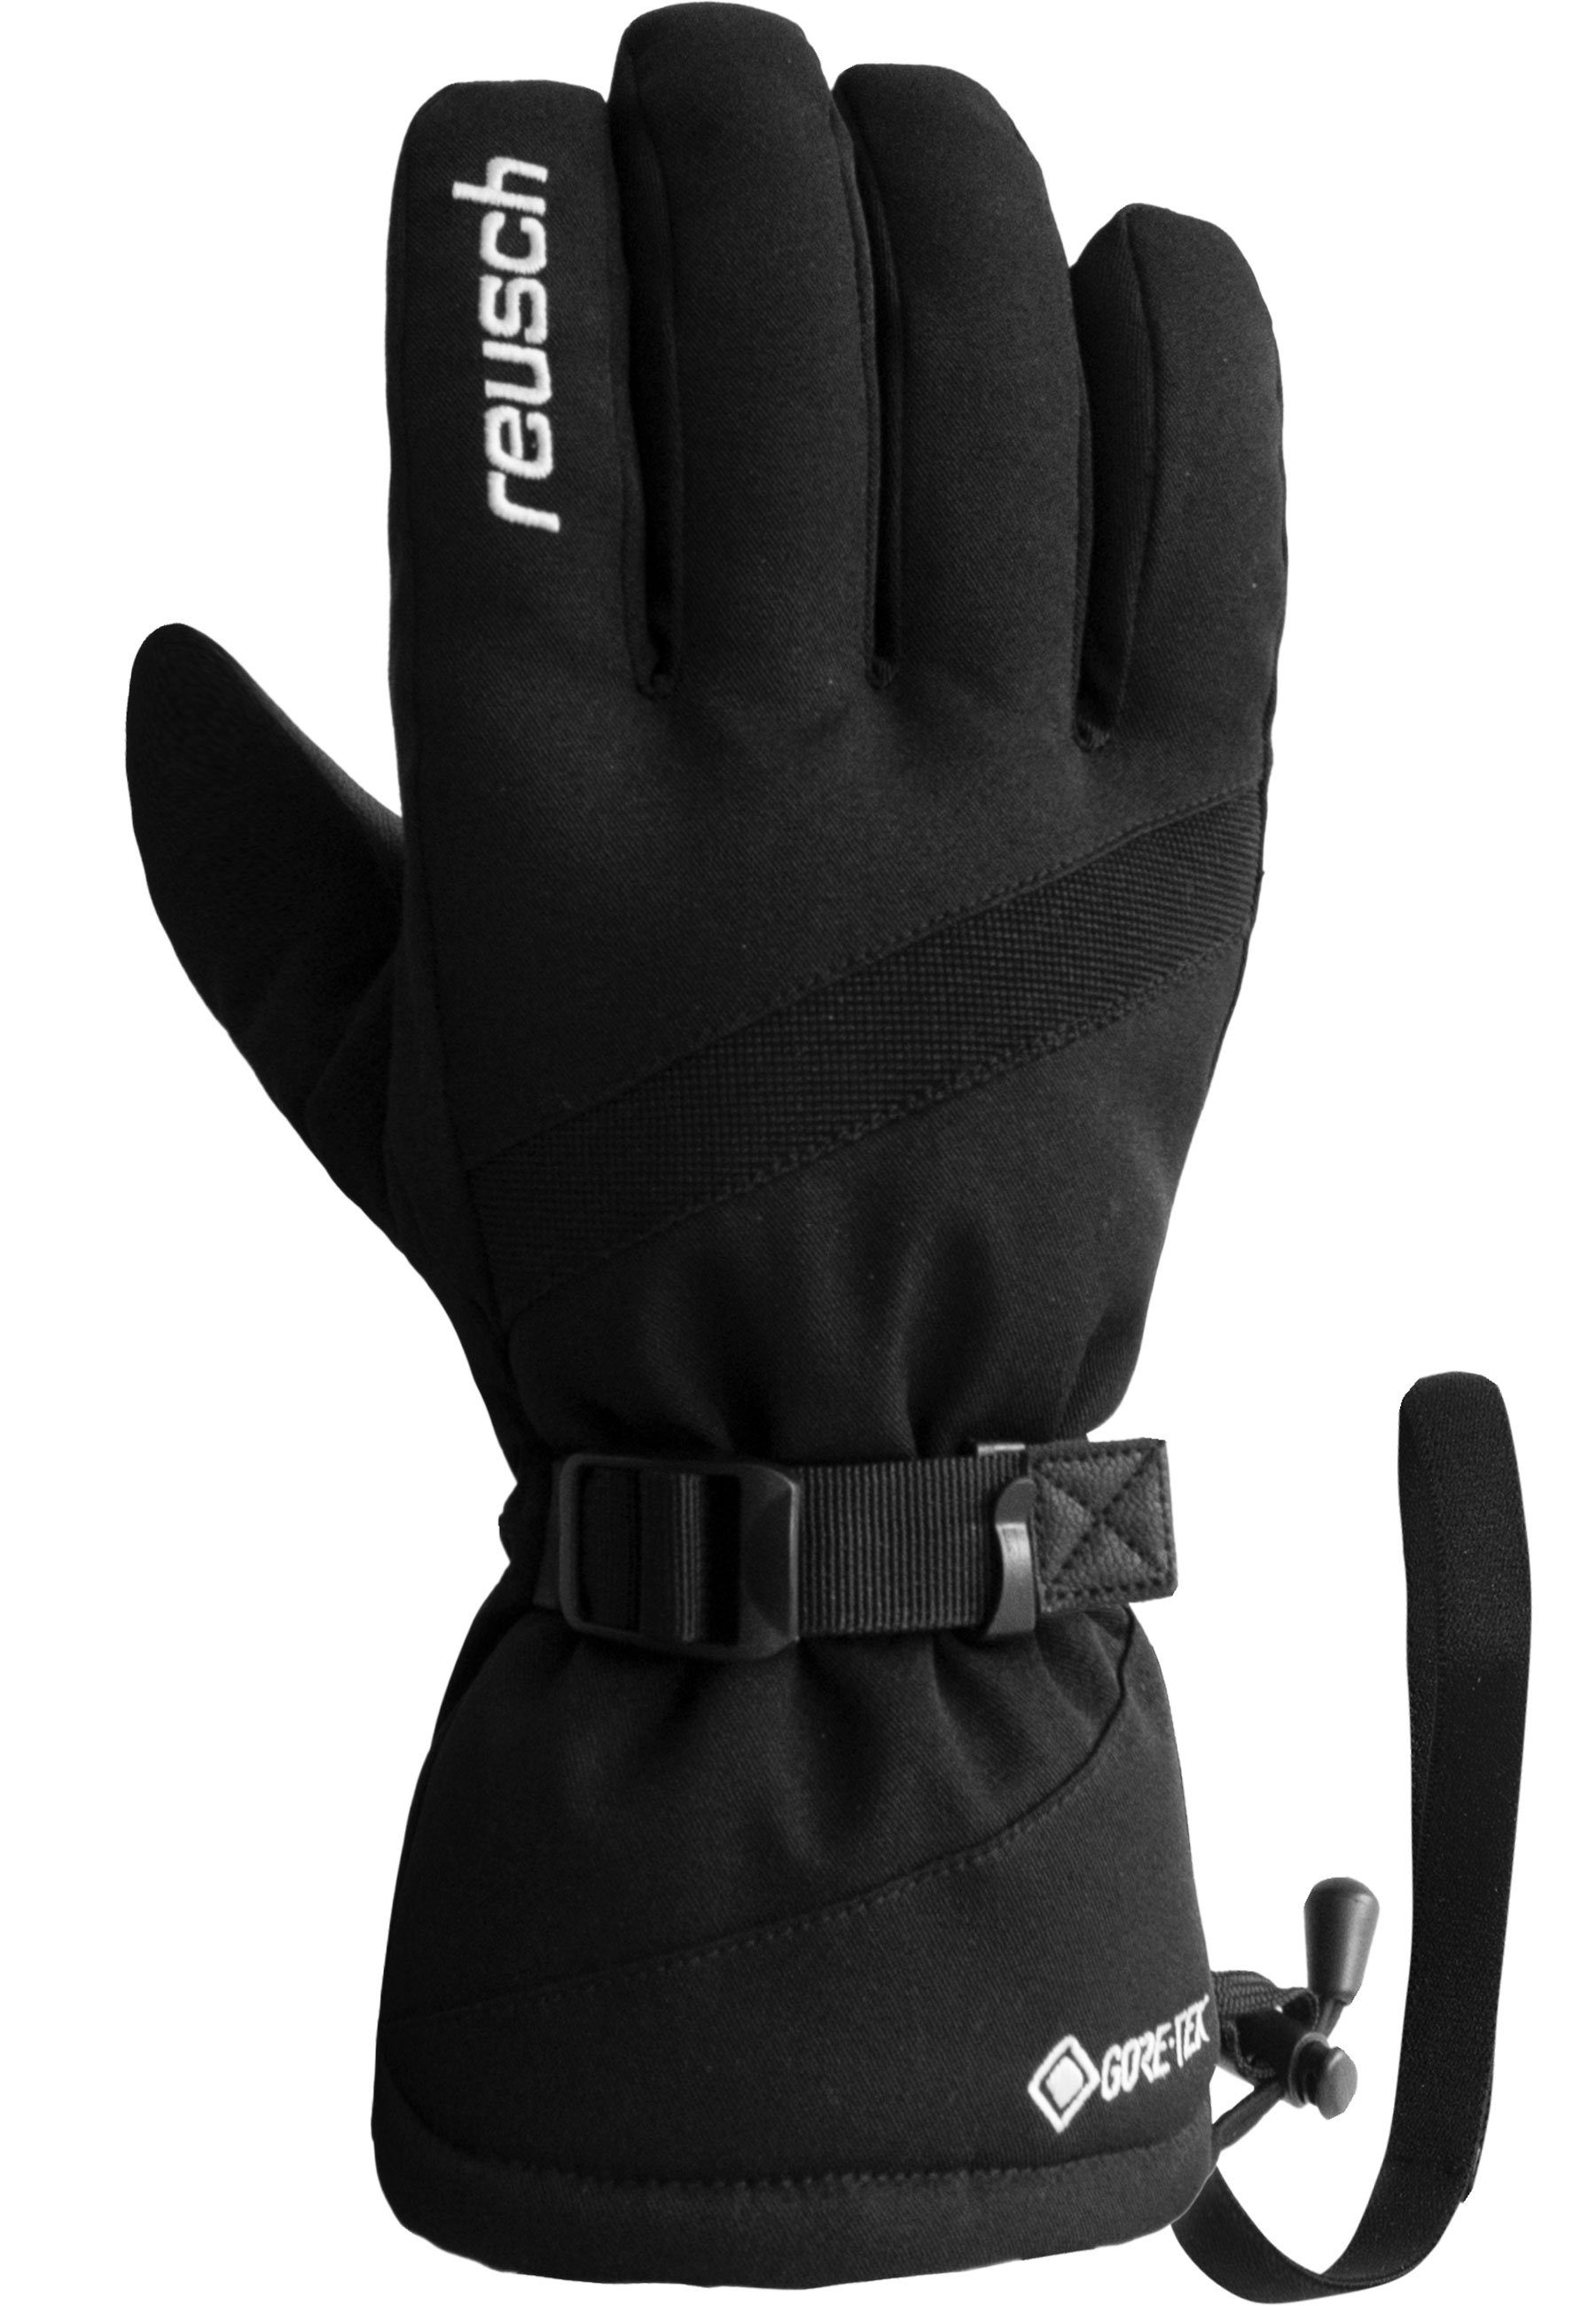 Reusch Skihandschuhe Winter Glove atmungsaktivem GORE-TEX Warm wasserdichtem aus Material und